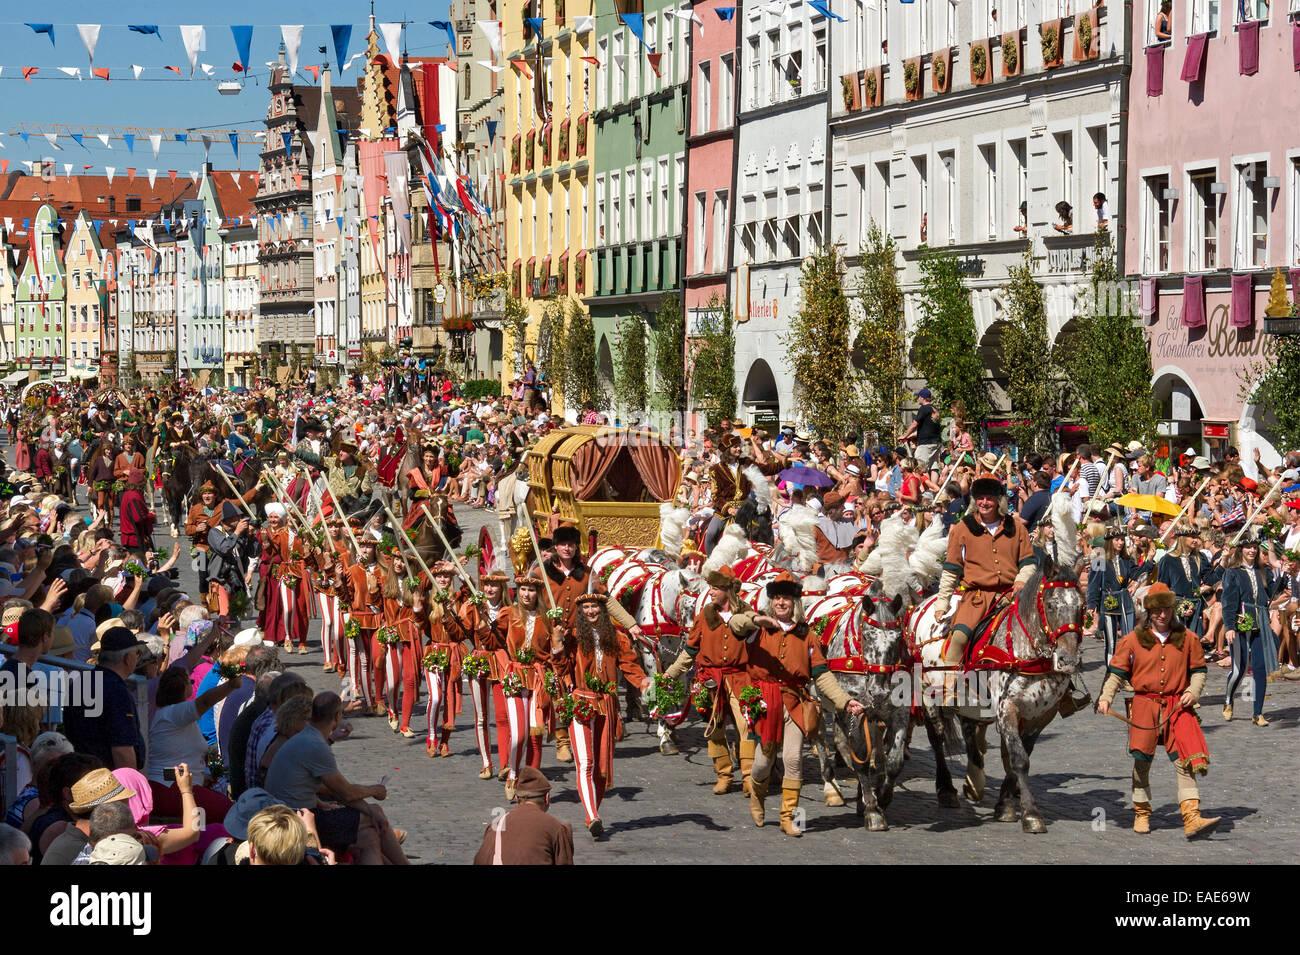 Caballos carro nupcial de oro y escoltas, procesión de la boda boda Landshut', el centro histórico, Landshut Foto de stock